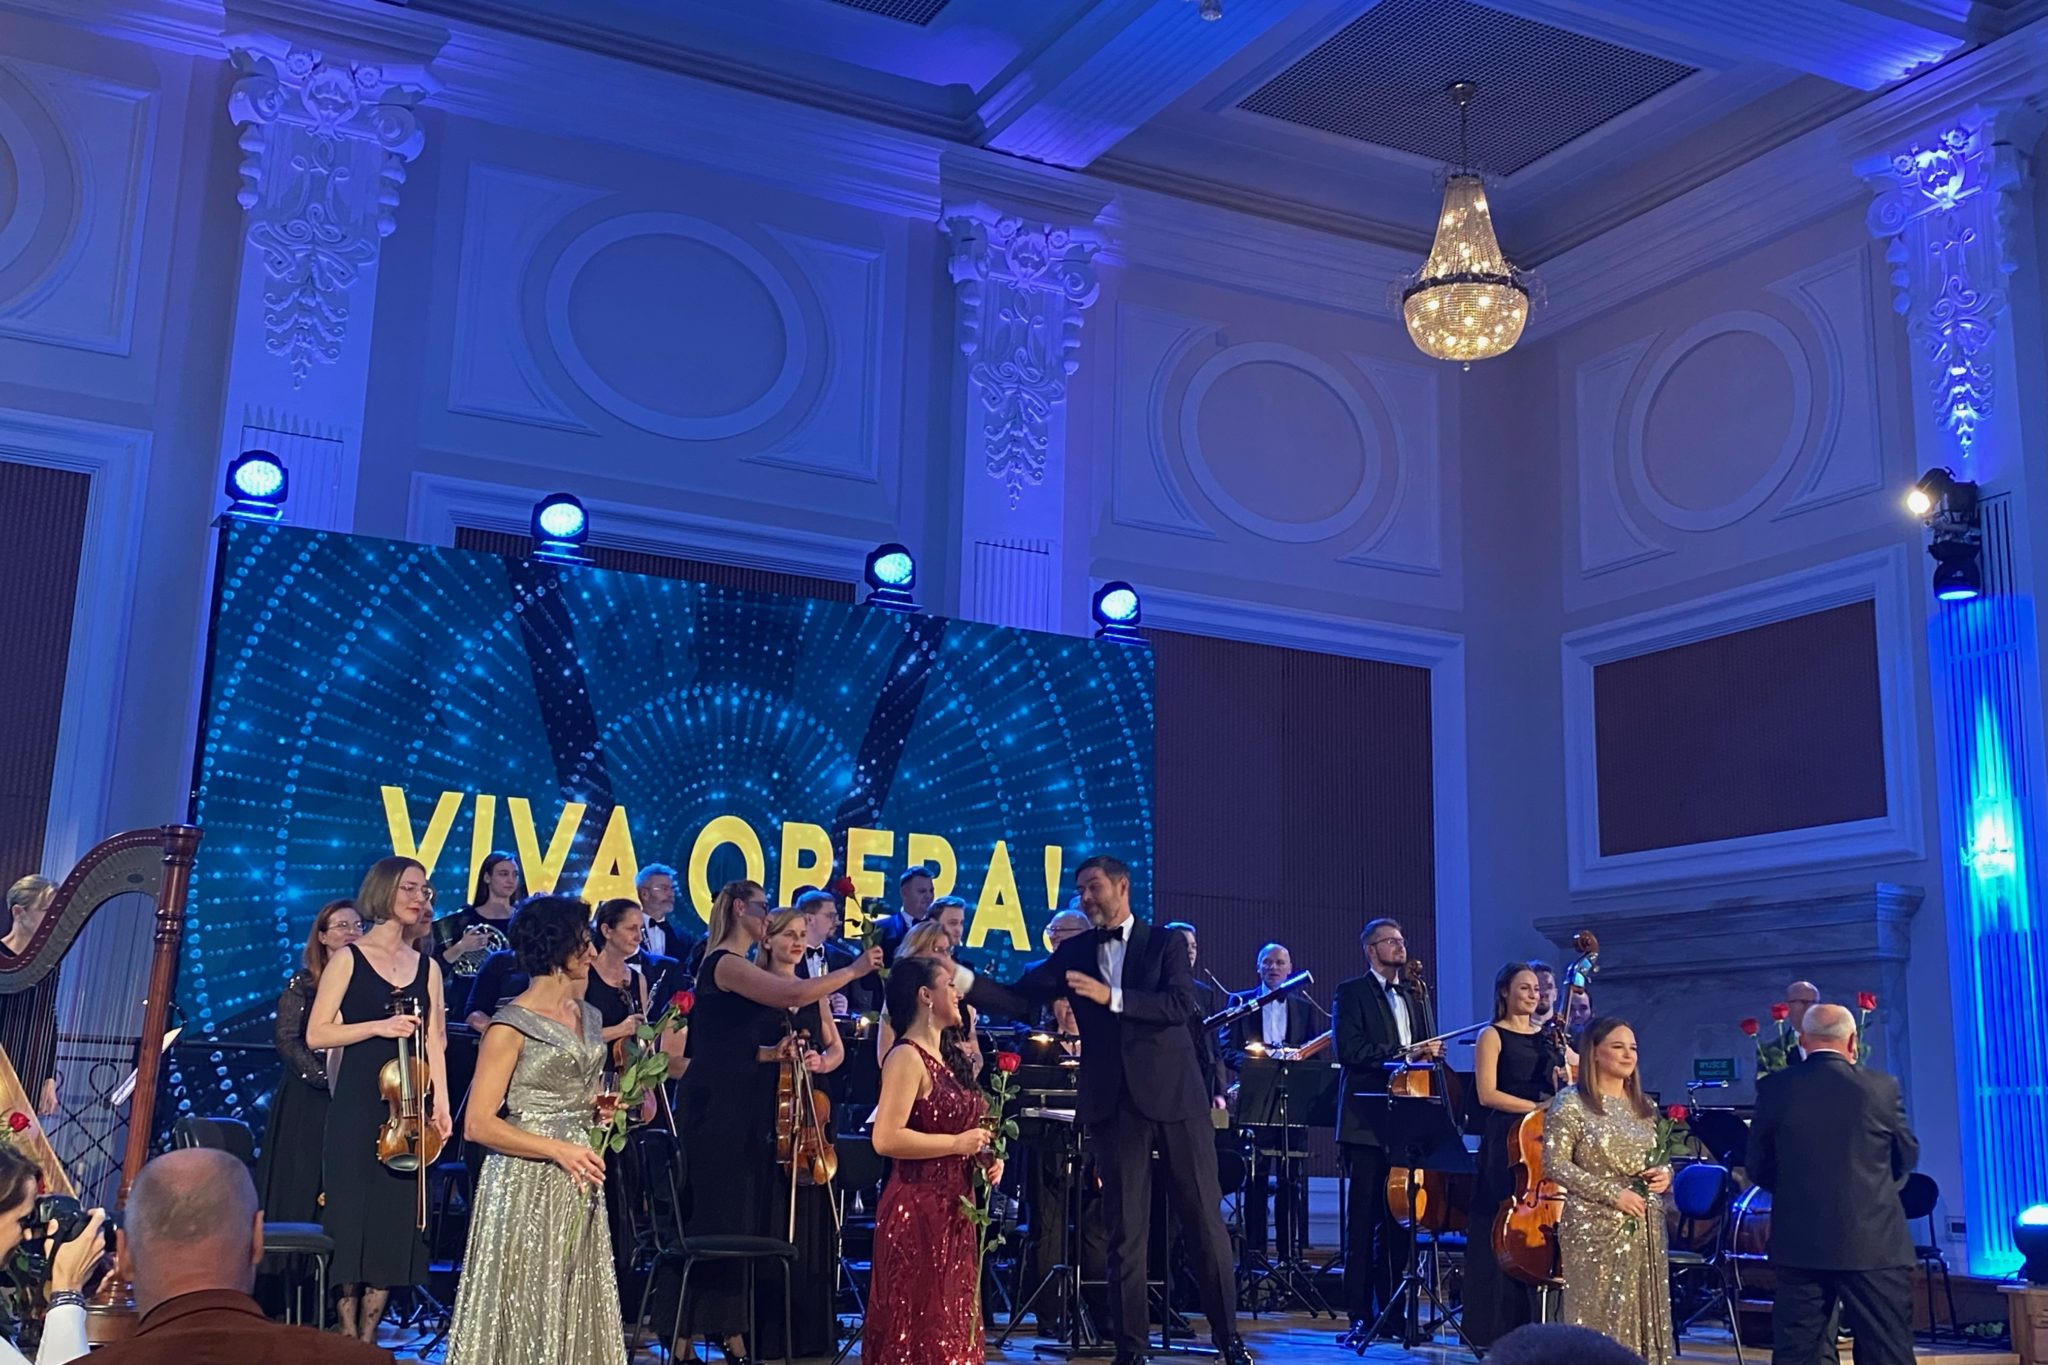 Liczna grupa osób na scenie, na pierwszym planie kobieta w czerwonej sukni. W tle baner z napisem viva opera.